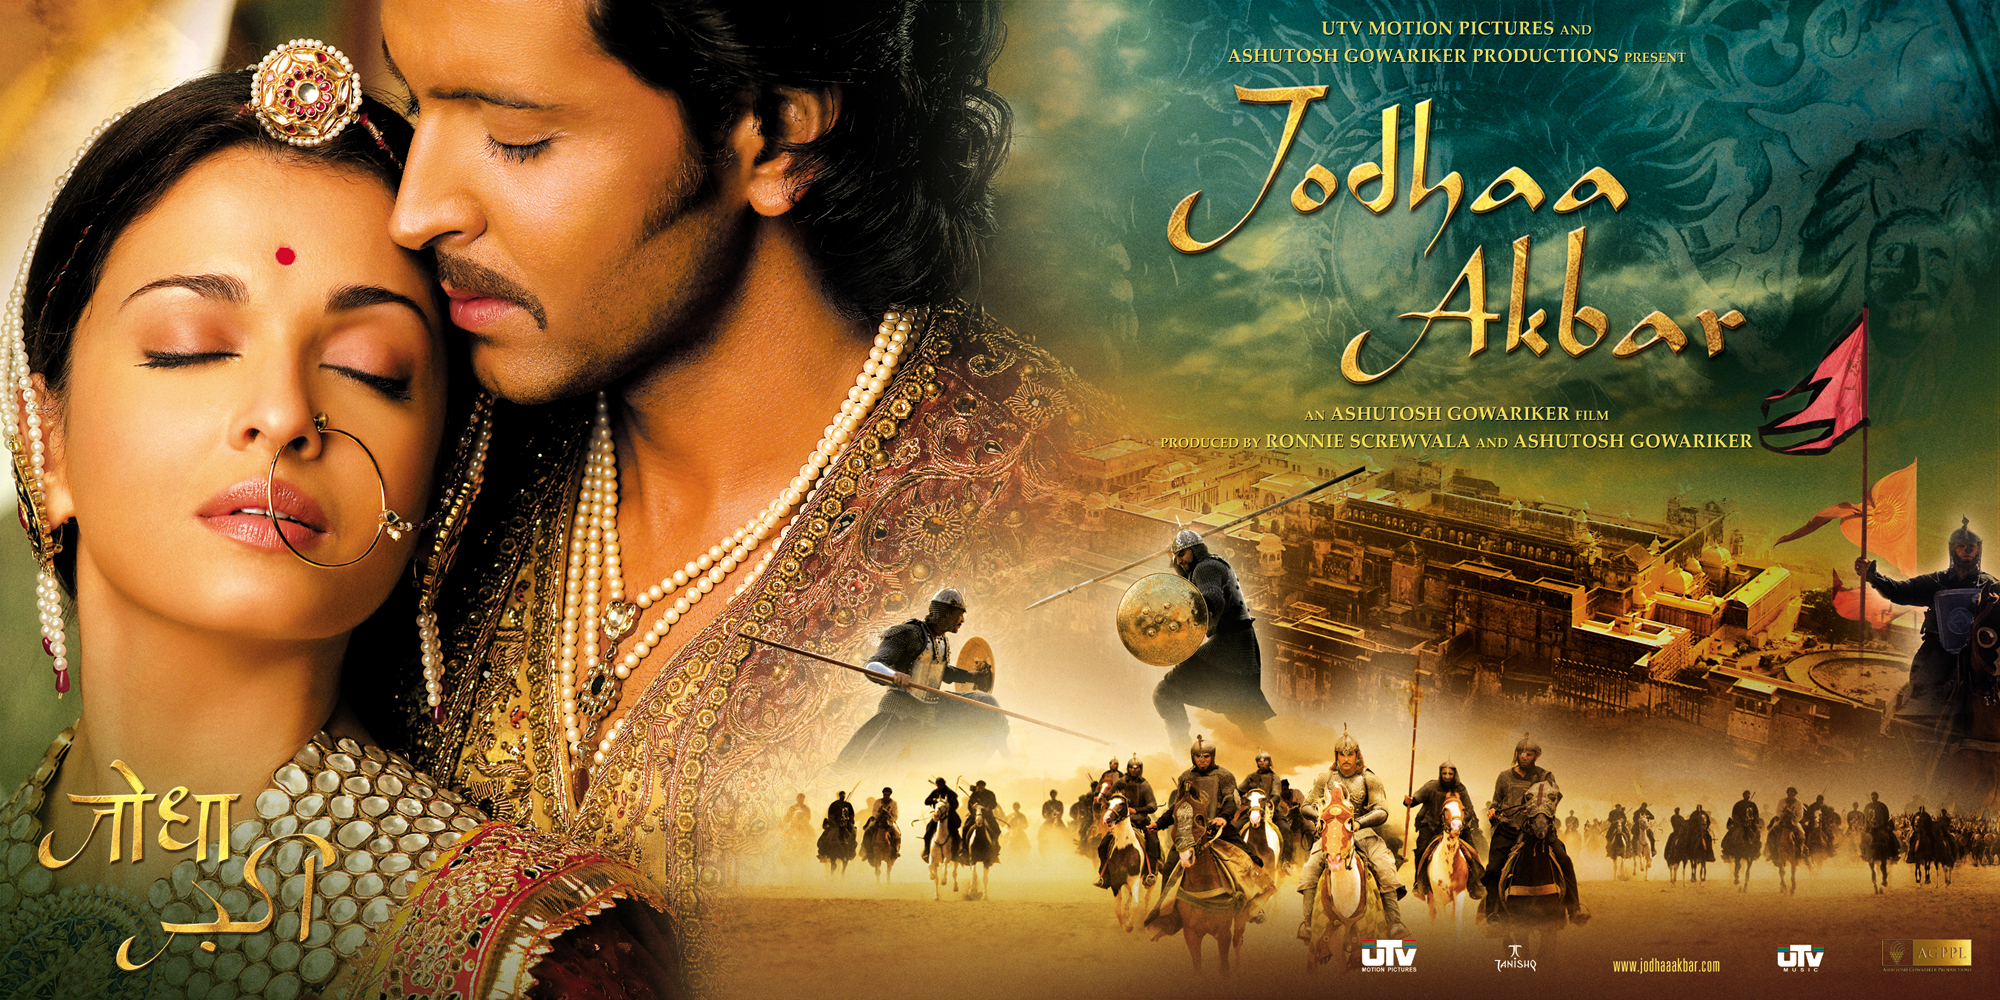 72-727521_this-jodha-akbar-movie-poster.